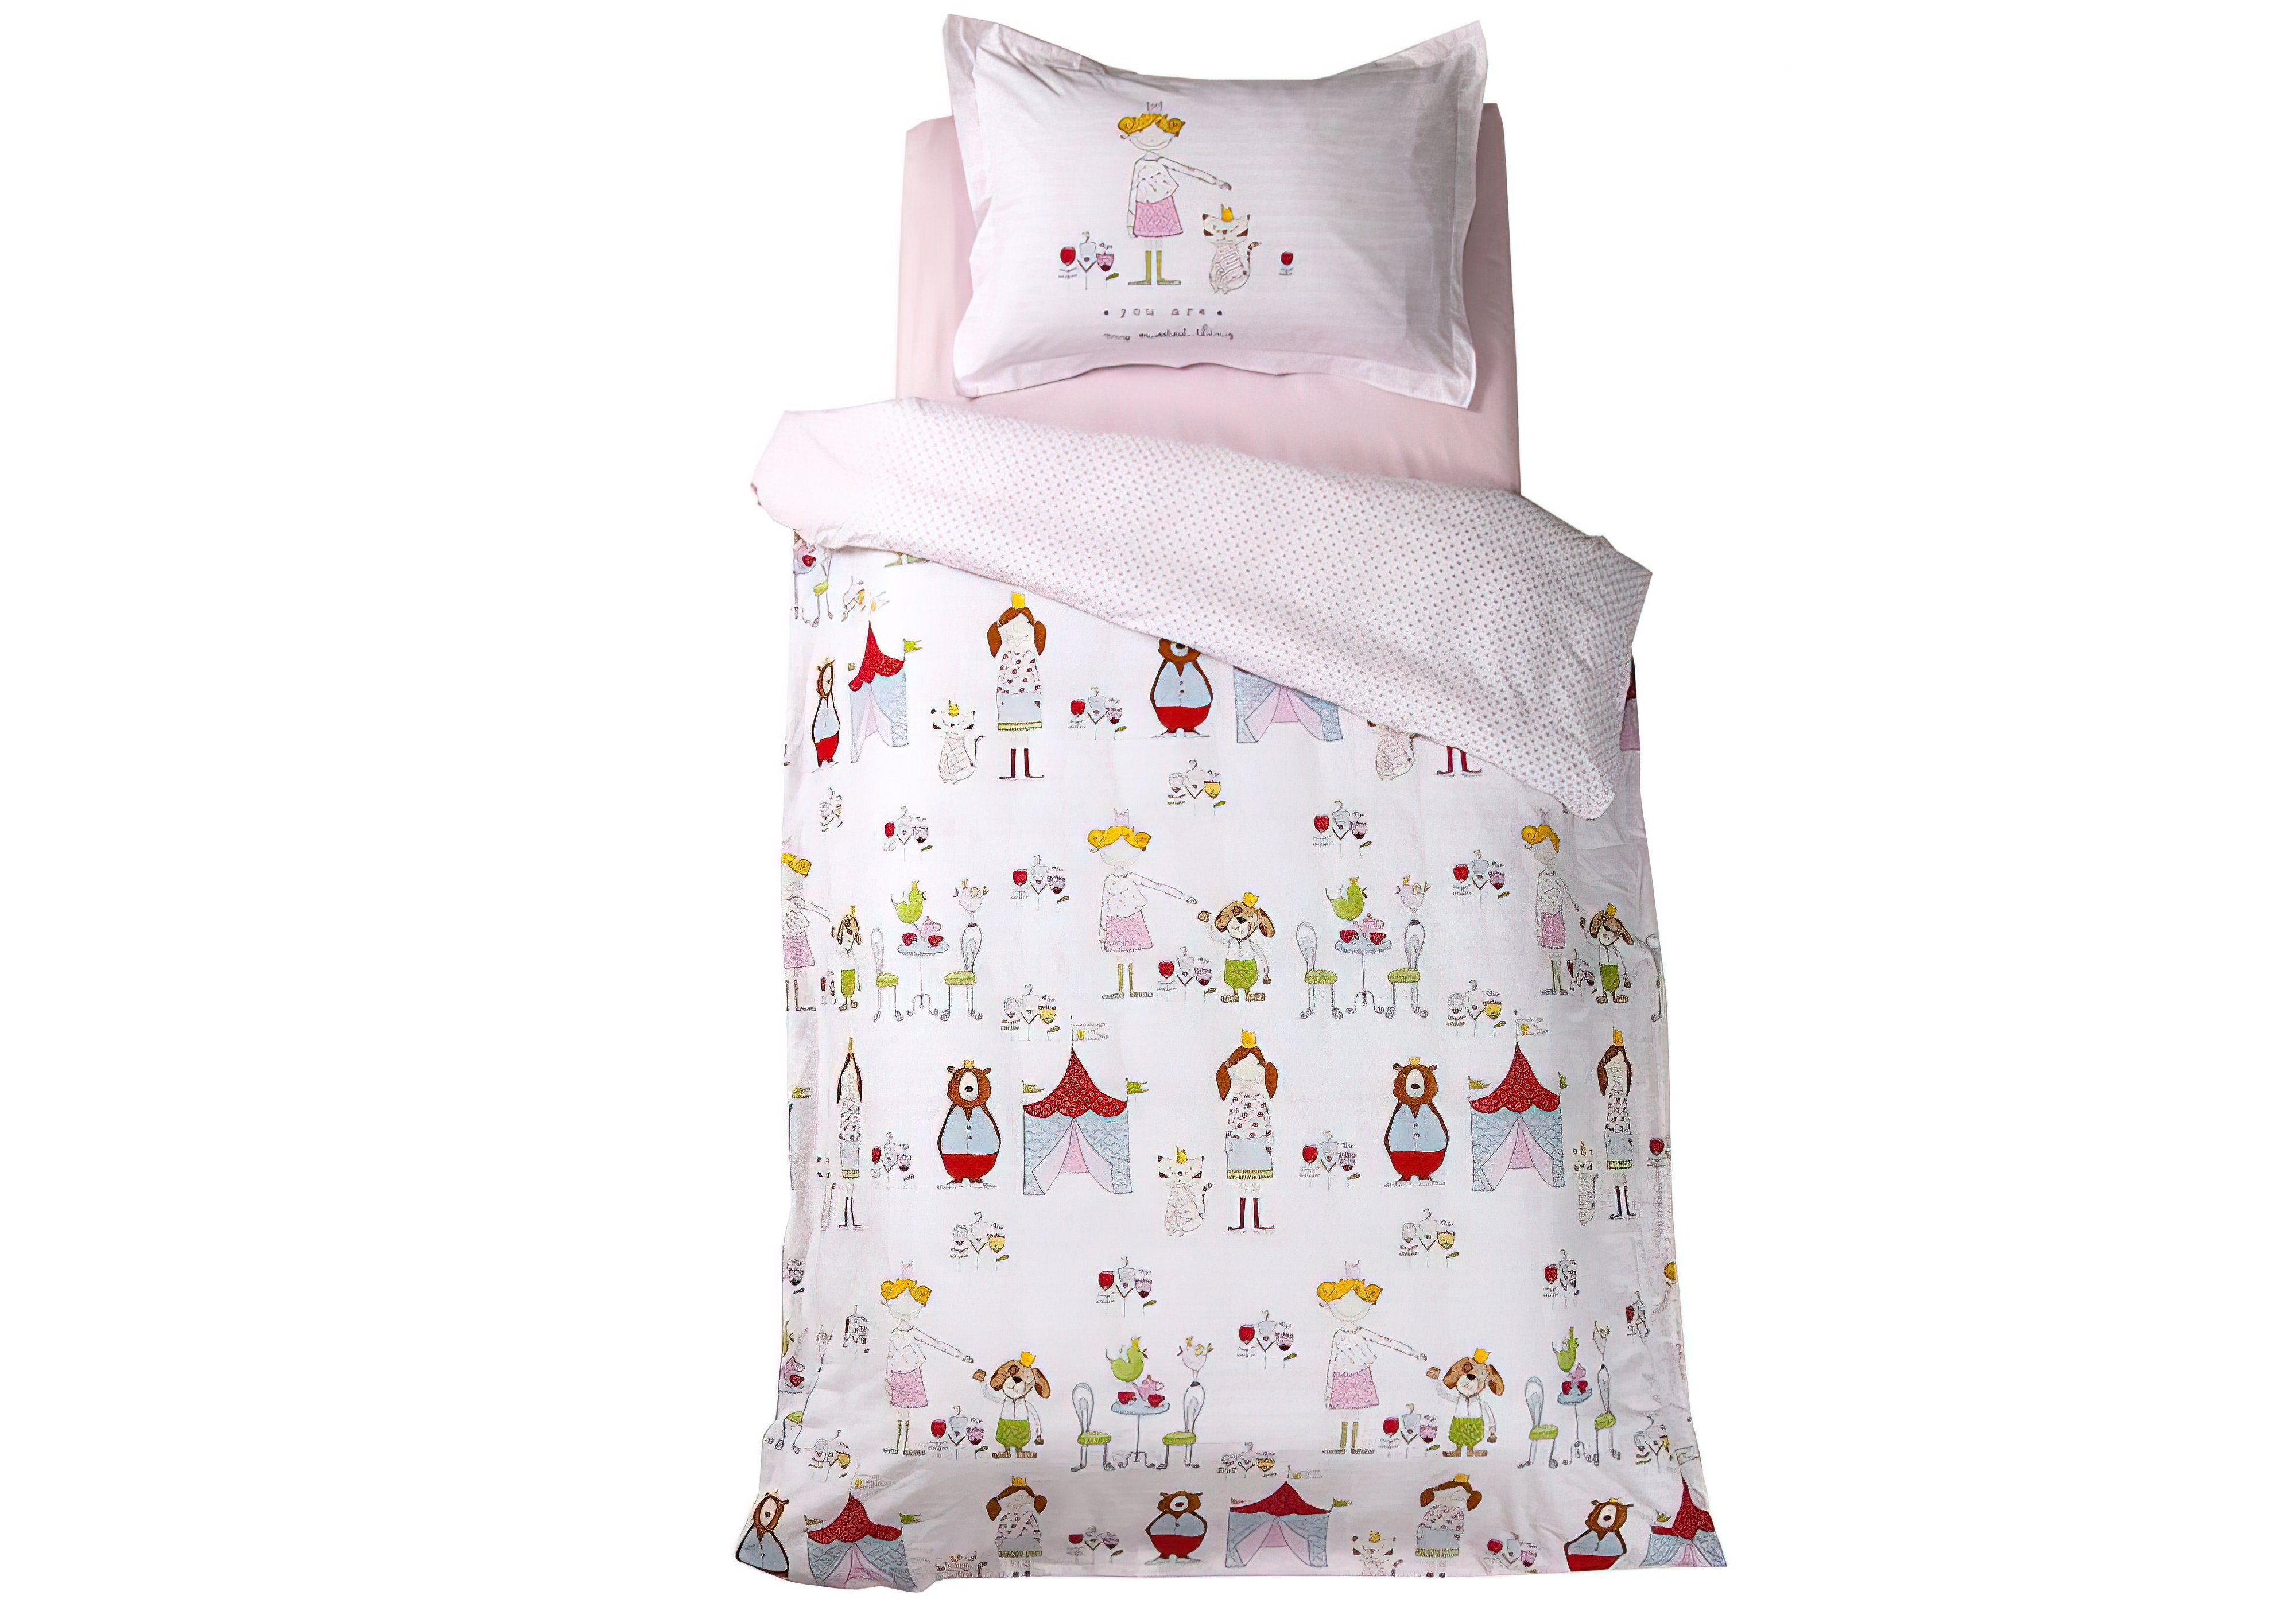 Комплект детского постельного белья Tienda 2018-1 Karaca Home, Количество спальных мест Двуспальный